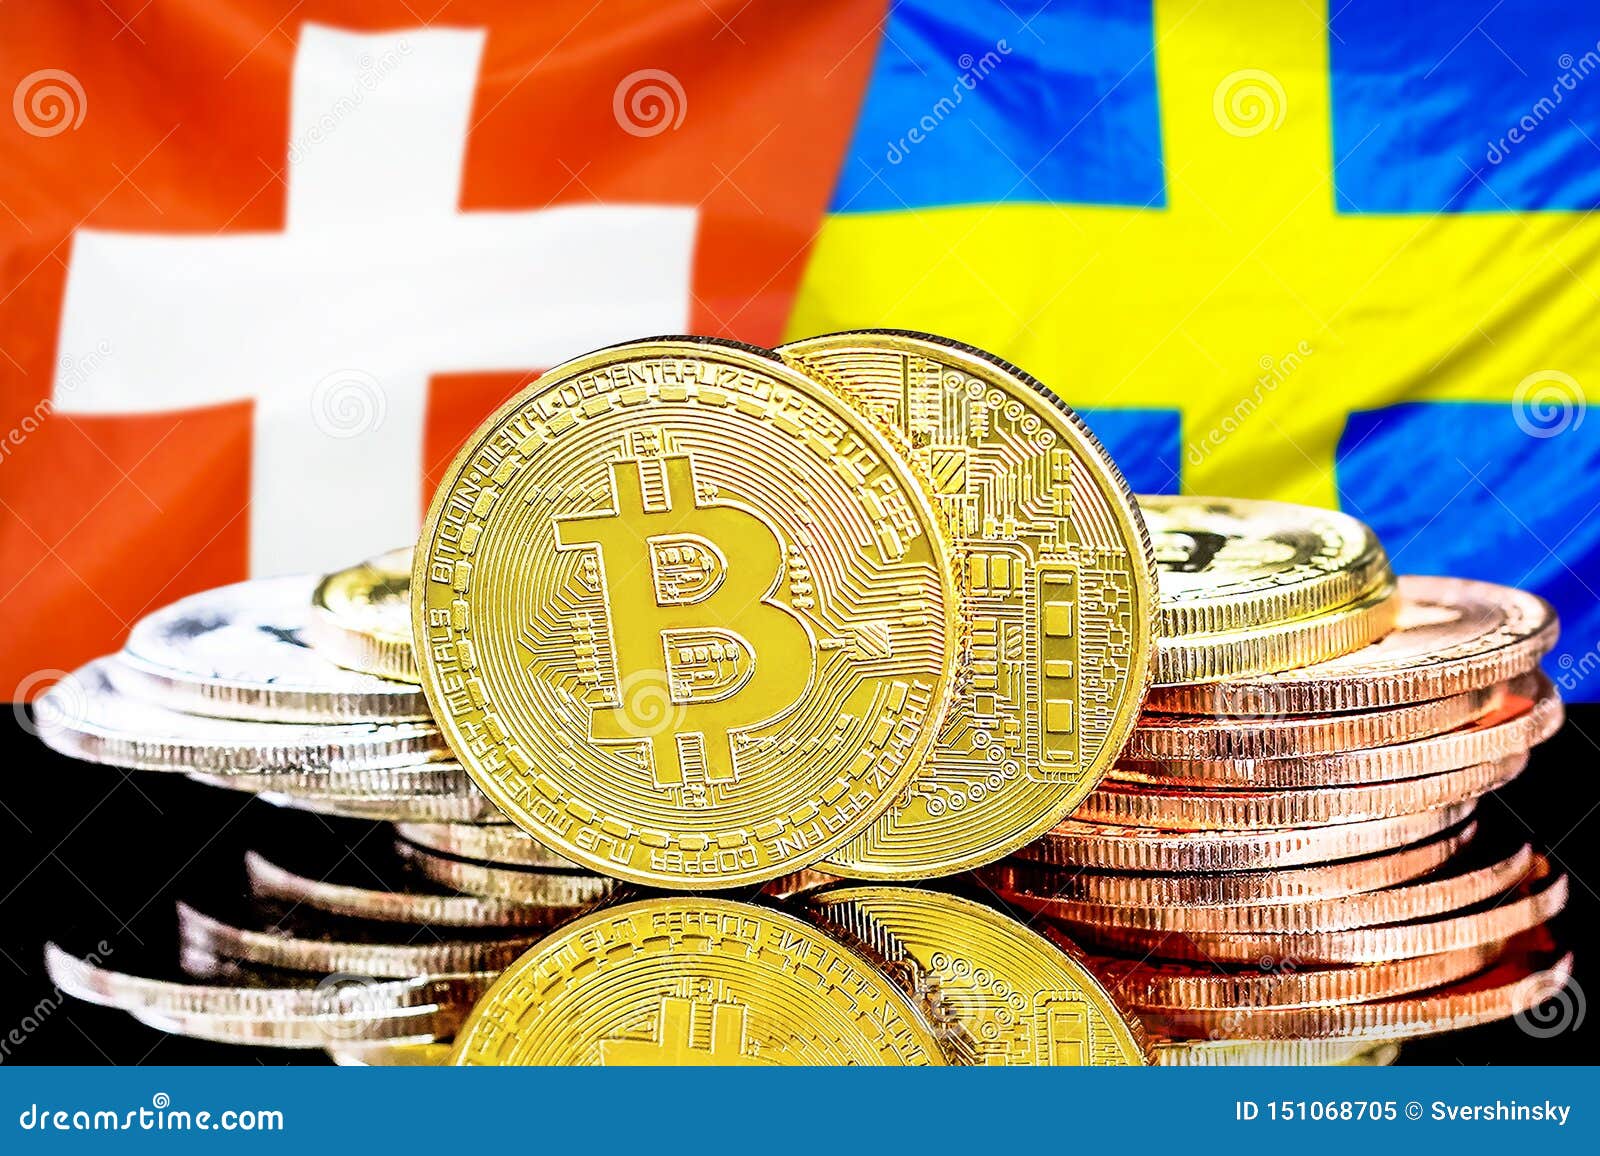 bitcoin buy sweden